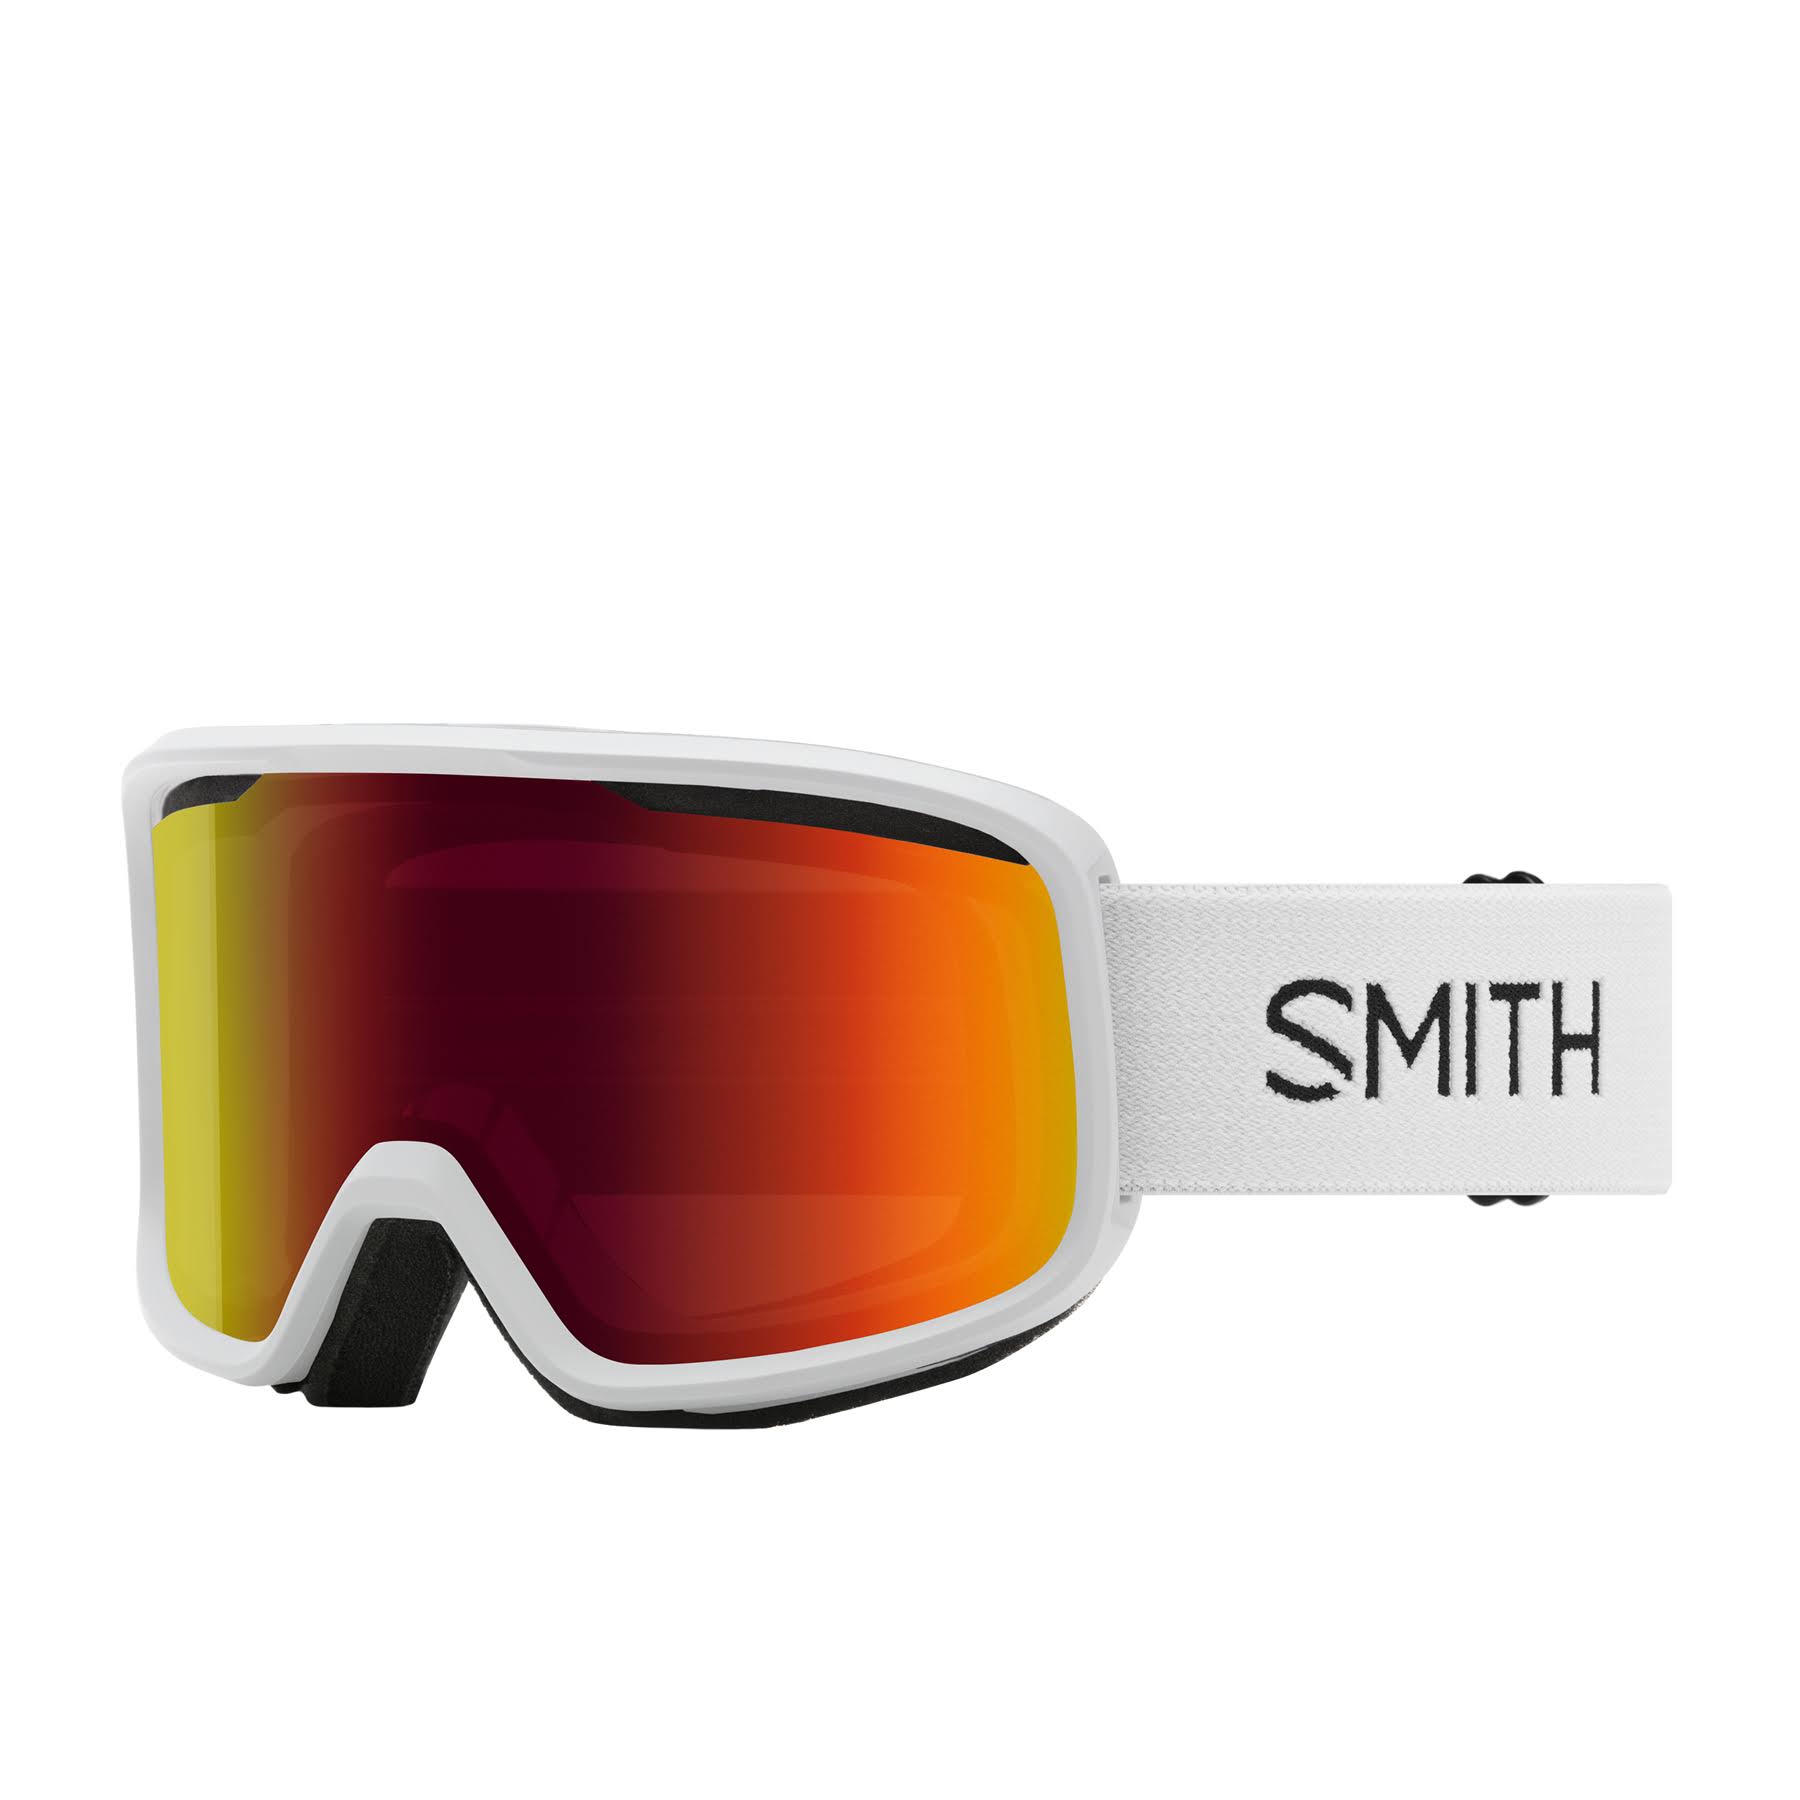 Smith Frontier Ski Goggles - White / Red Sol-X Mirror